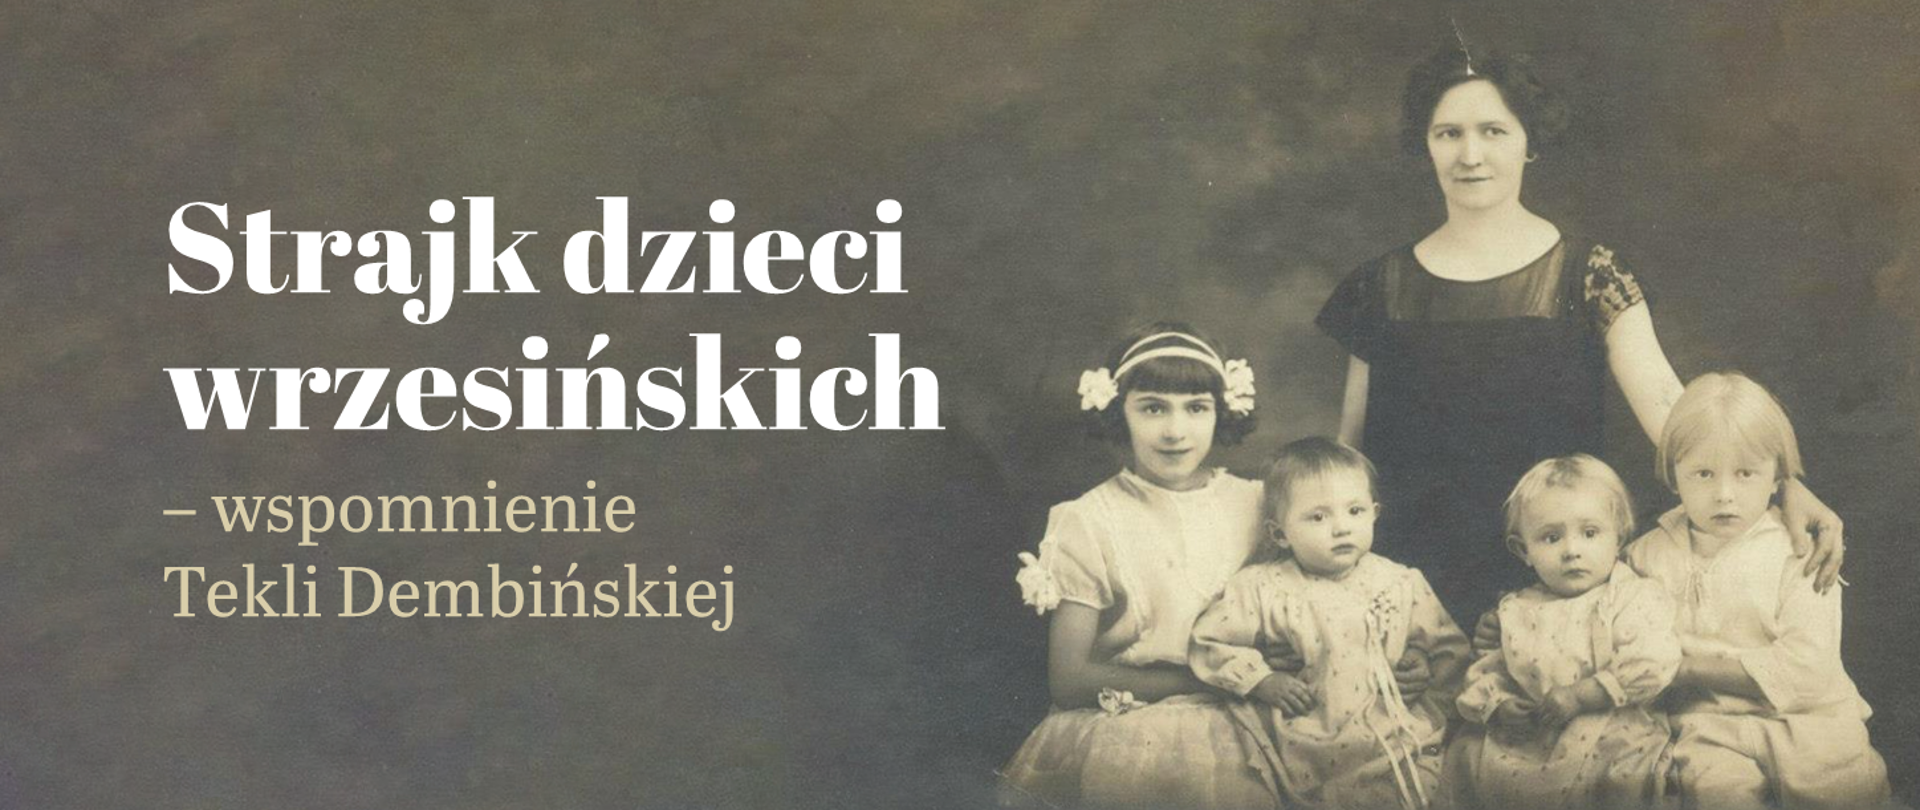 Stare, czarno-białe zdjęcie przedstawiające kobietę z czwórką dzieci i napis Strajk dzieci wrzesińskich - wspomnienie Tekli Dembińskiej.